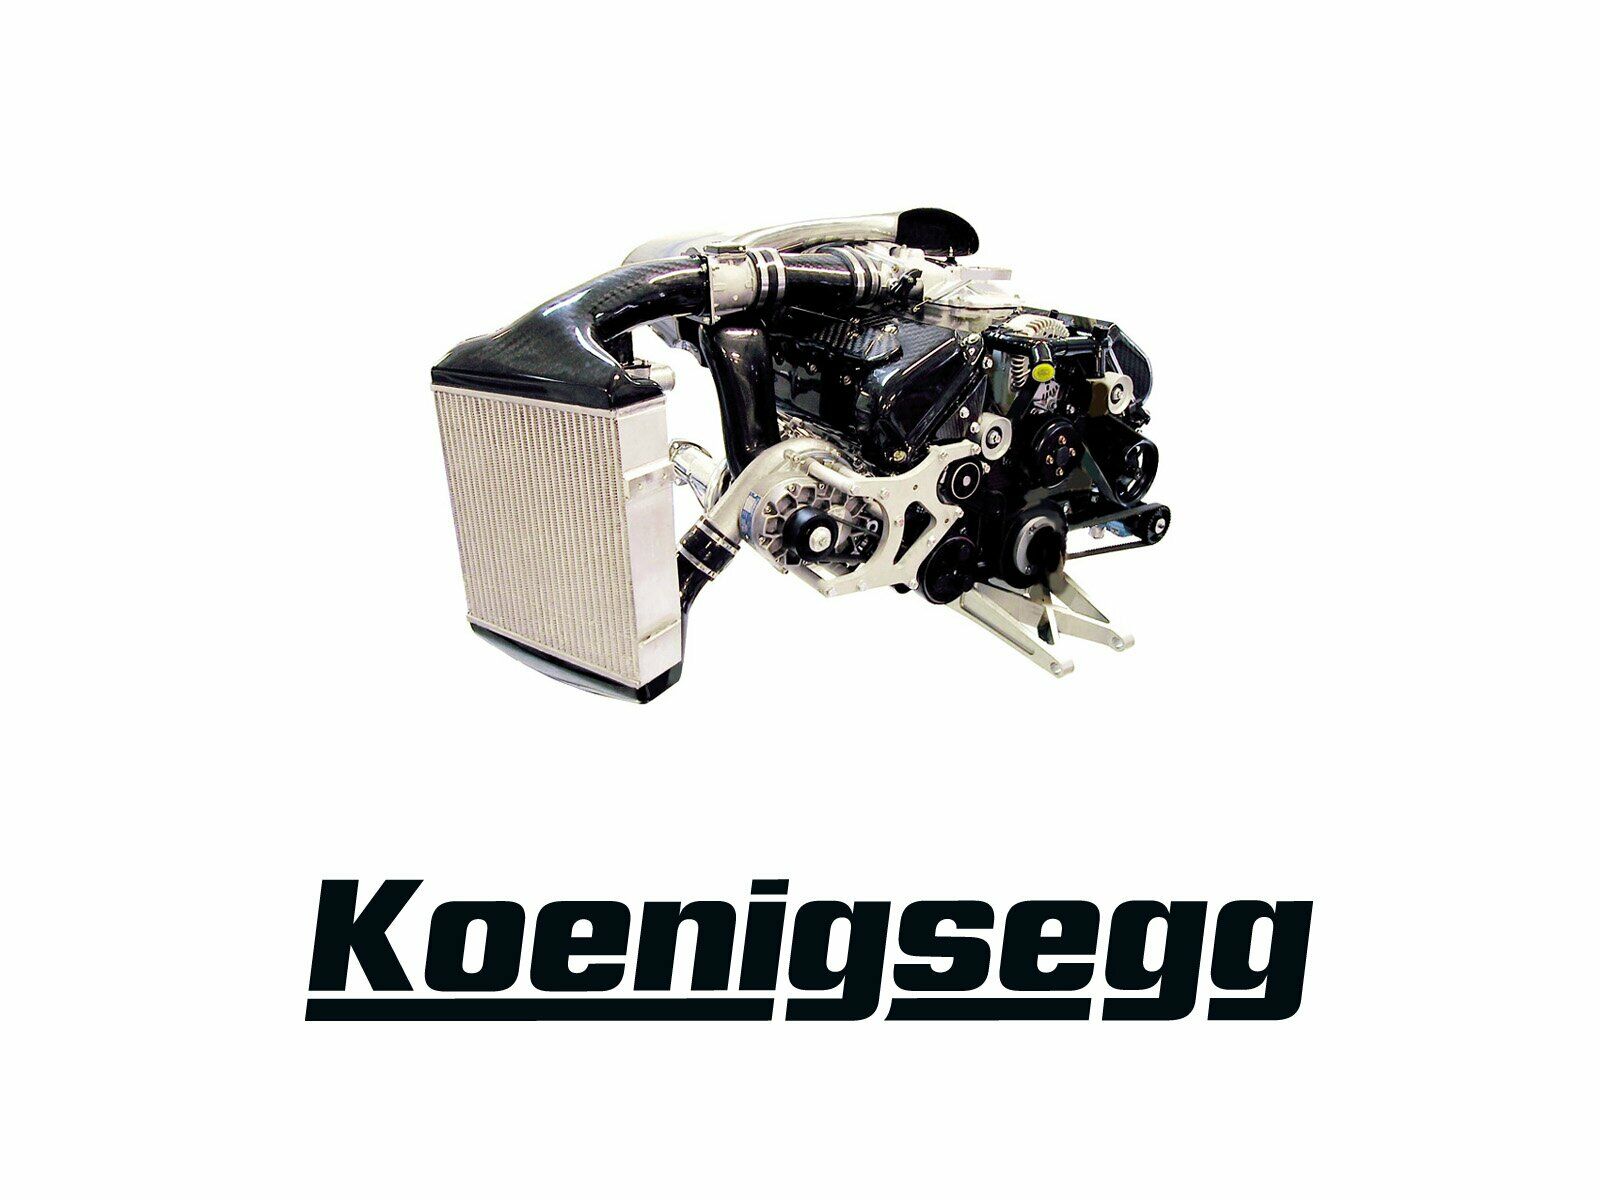 Скачать картинку Кенигсегг, Транспортные Средства в телефон бесплатно.